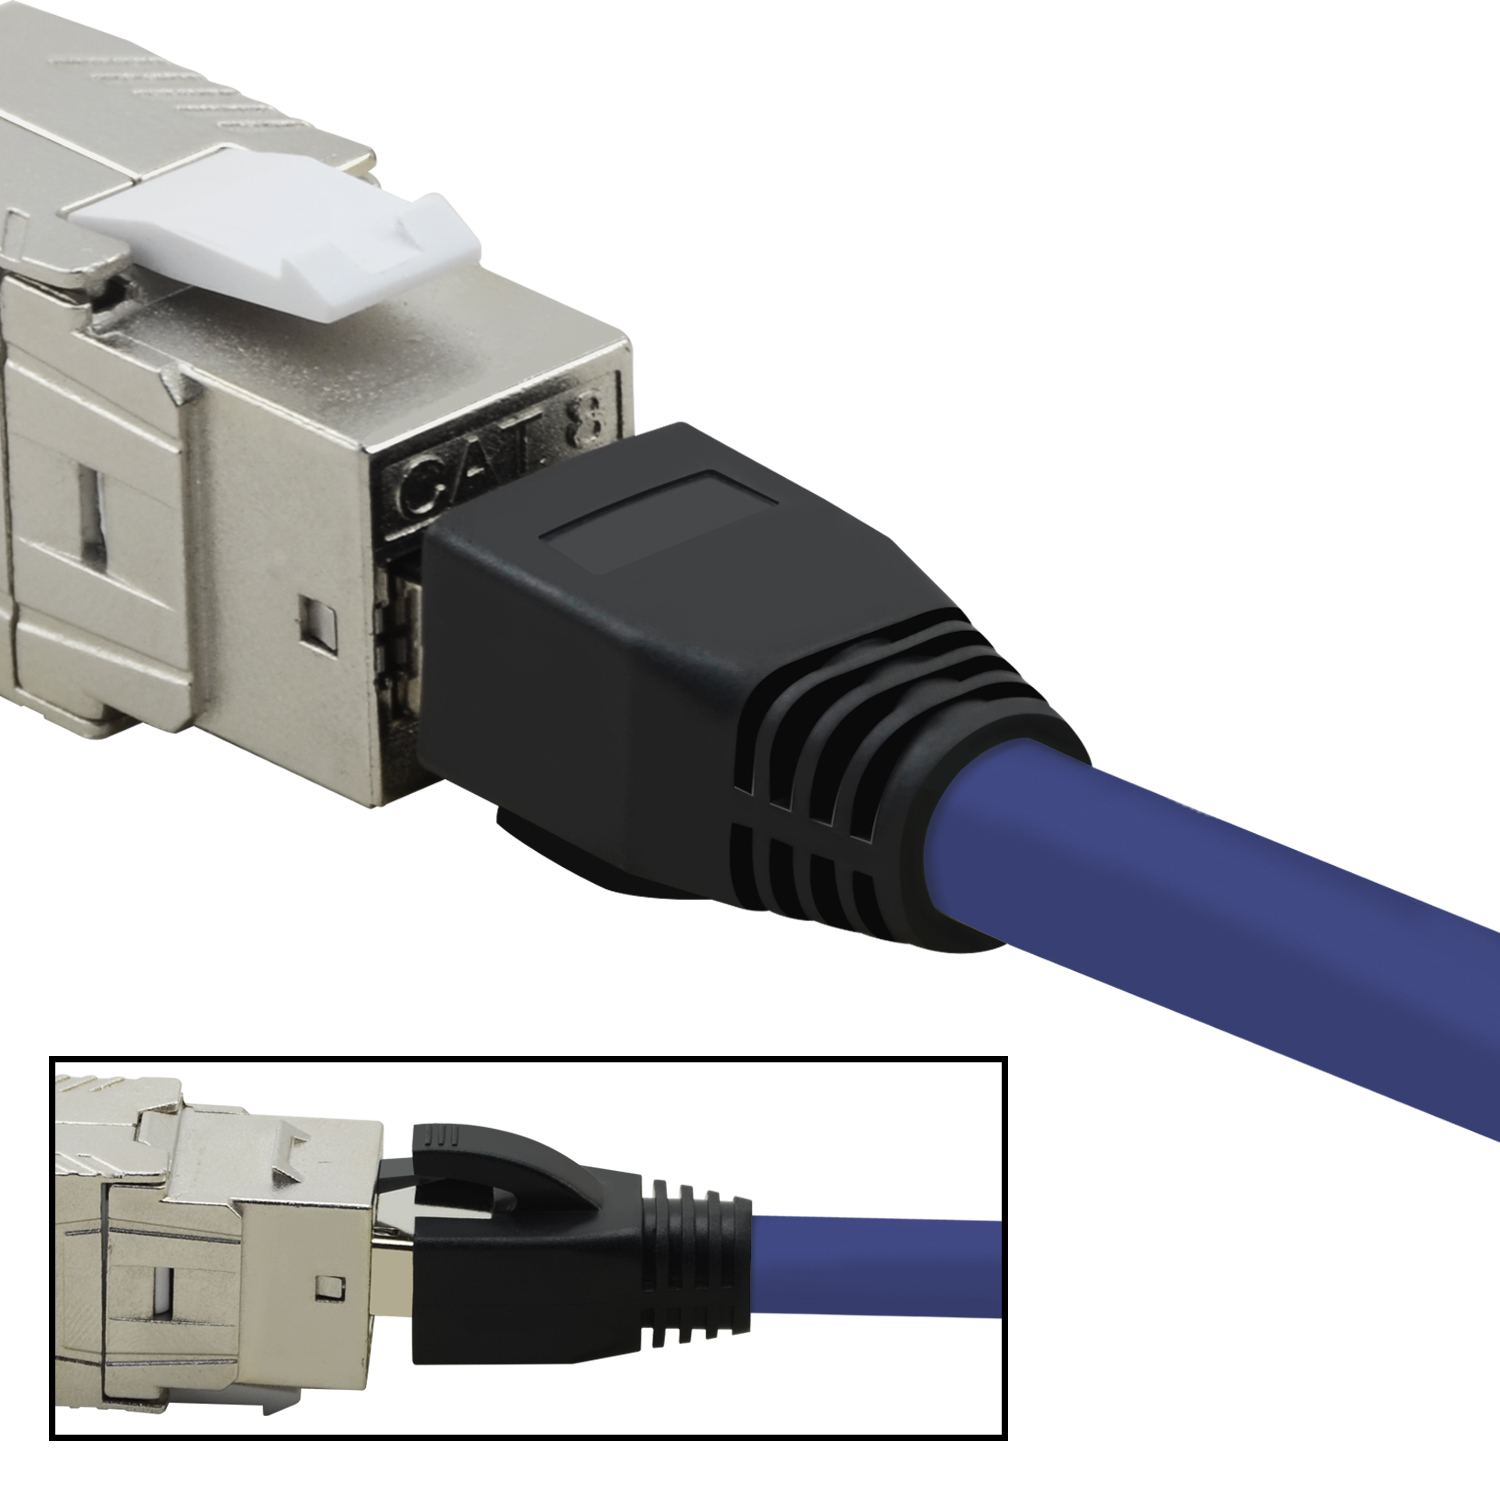 3 Patchkabel m 40 Netzwerkkabel, violett, 5er / TPFNET Pack S/FTP GBit, 3m Netzwerkkabel